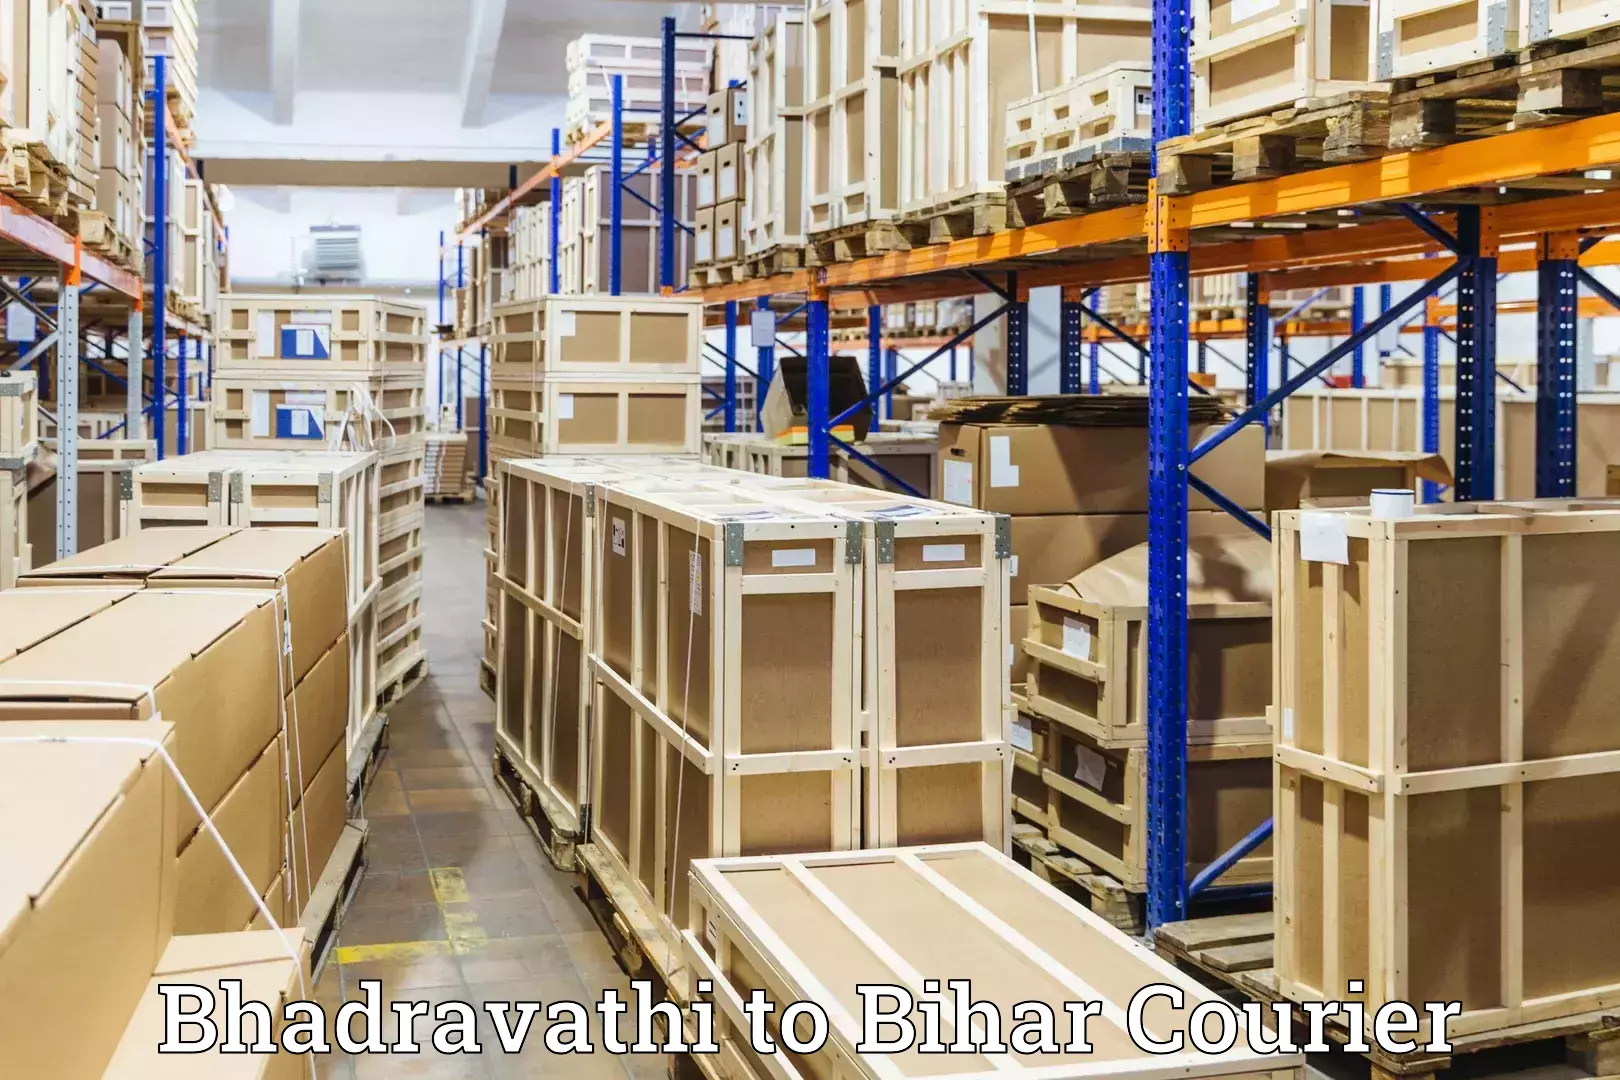 Luggage courier network Bhadravathi to Aurangabad Bihar